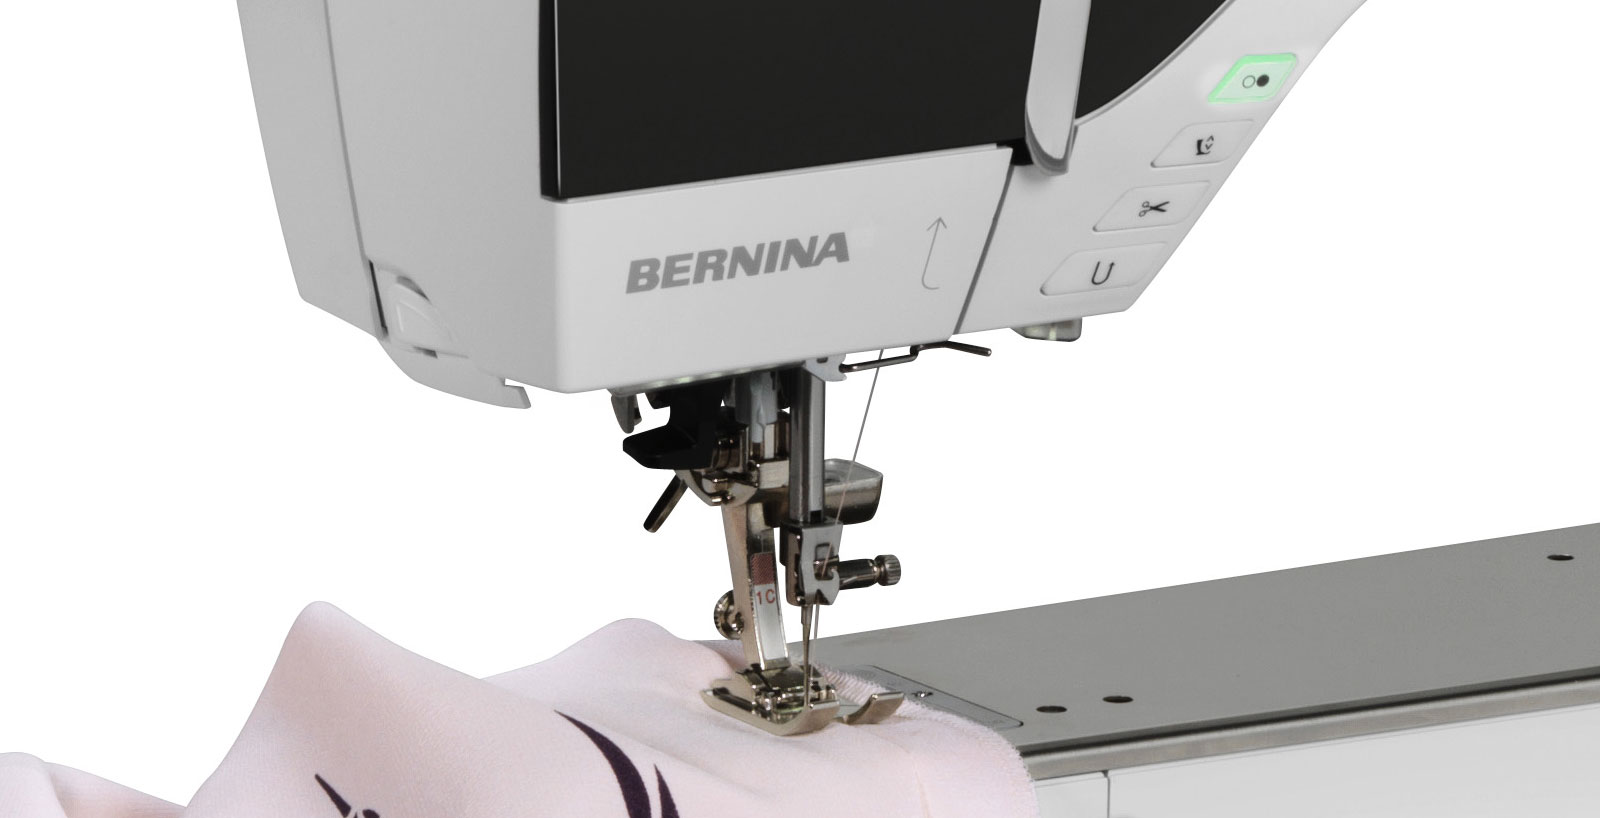 Швейно-вышивальная машина Bernina 790 Plus. Фото N4